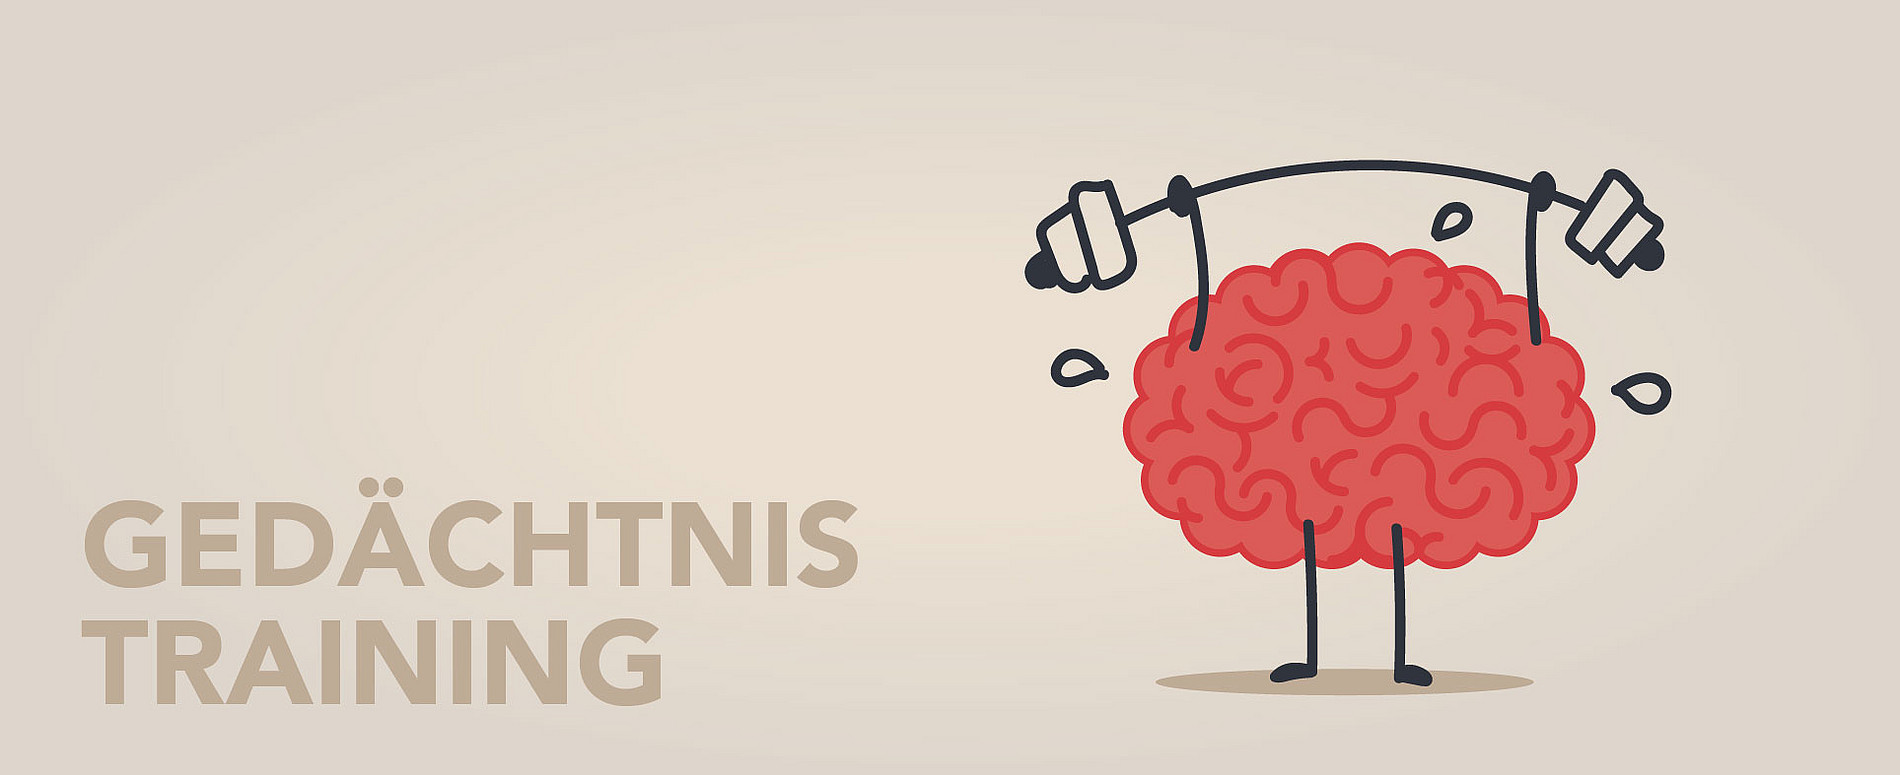 Gedächtnistraining: Karikatur eines Gehirns das ein Gewicht stemmt. Foto: Adobe Stock 